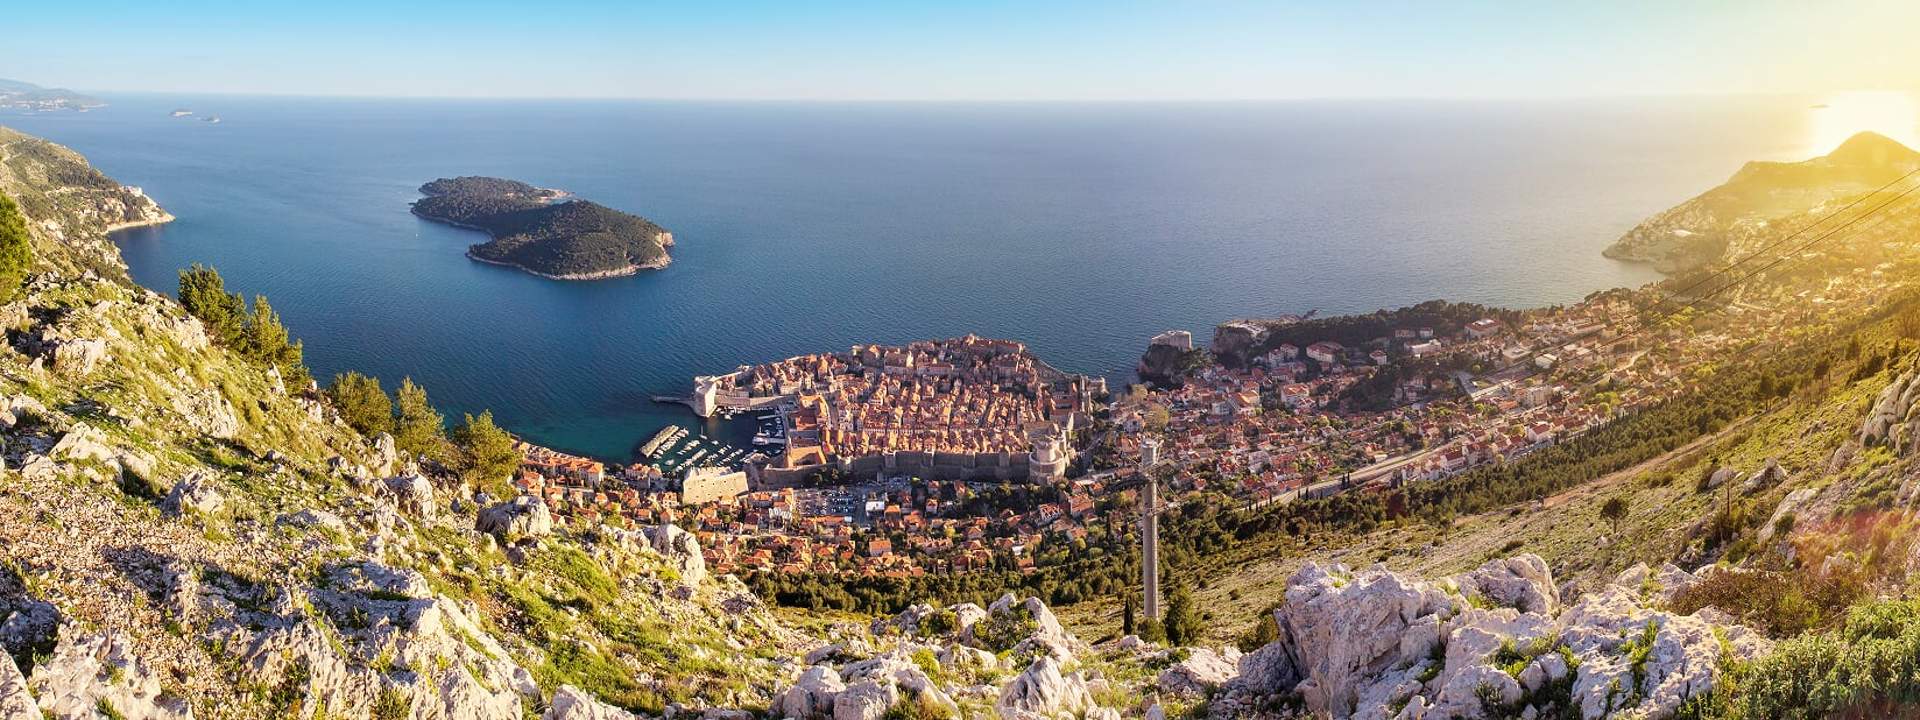 Découvrez le charme de la Croatie et la beauté de ses îles